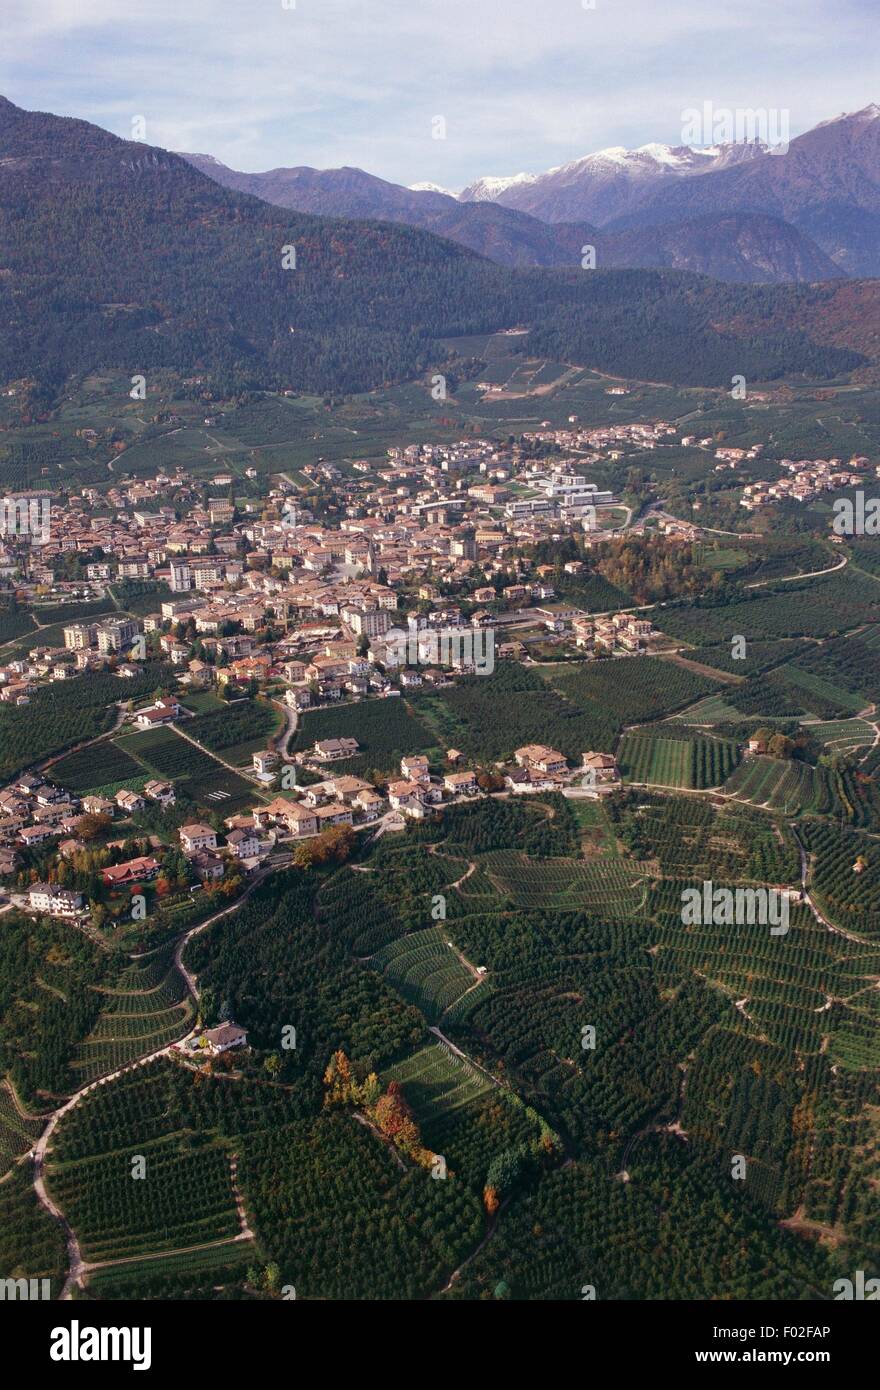 Vista aerea di Cles in Val di Non - Provincia di Trento, Regione Trentino-Alto Adige, Italia Foto Stock